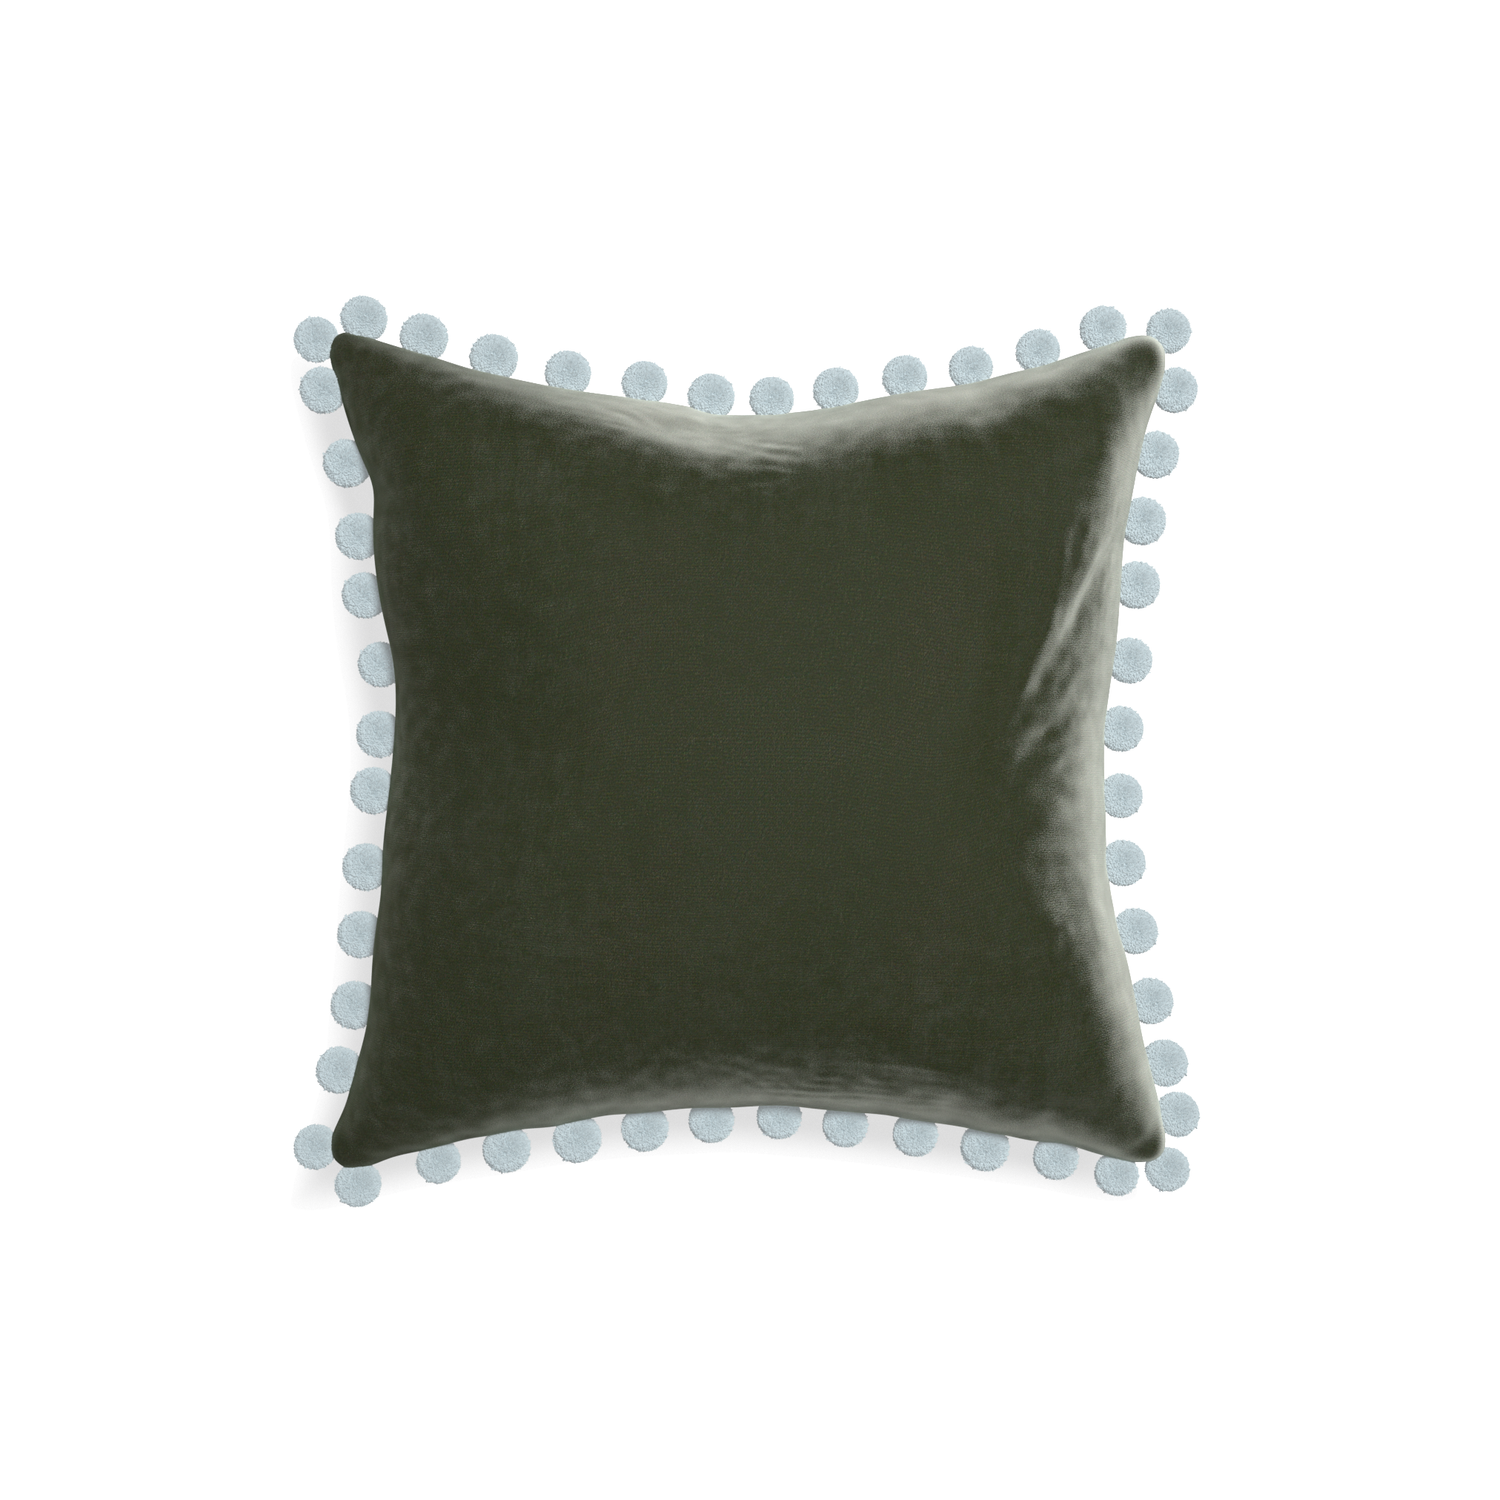 square fern green velvet pillow with light blue pom poms